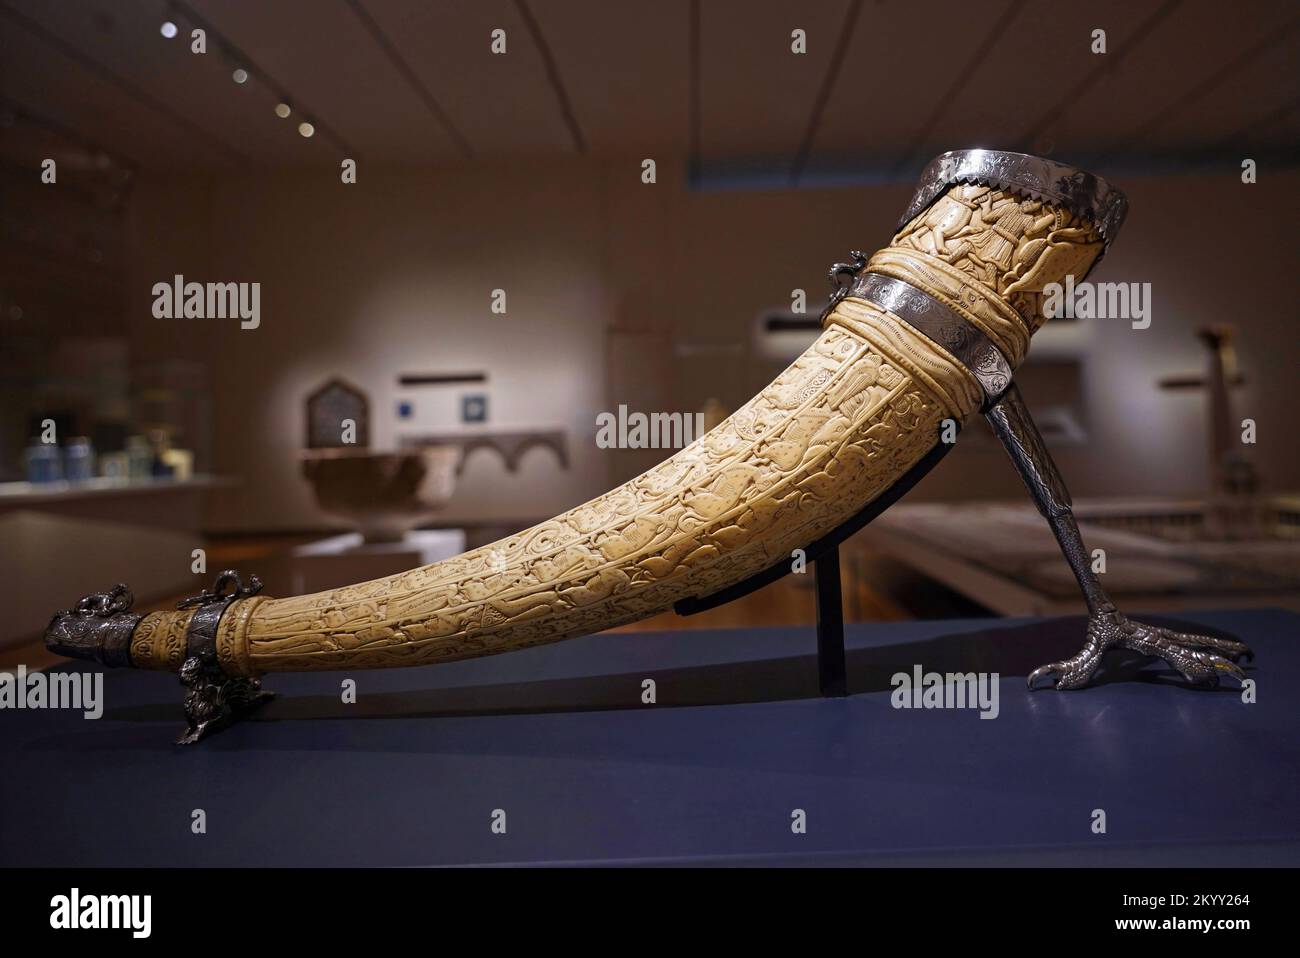 Toronto, Canada - Dicembre 2022: Il Museo Aga Khan contiene antichi manufatti islamici, come questo corno di caccia all'avorio del 12th ° secolo, conosciuto come un ol Foto Stock